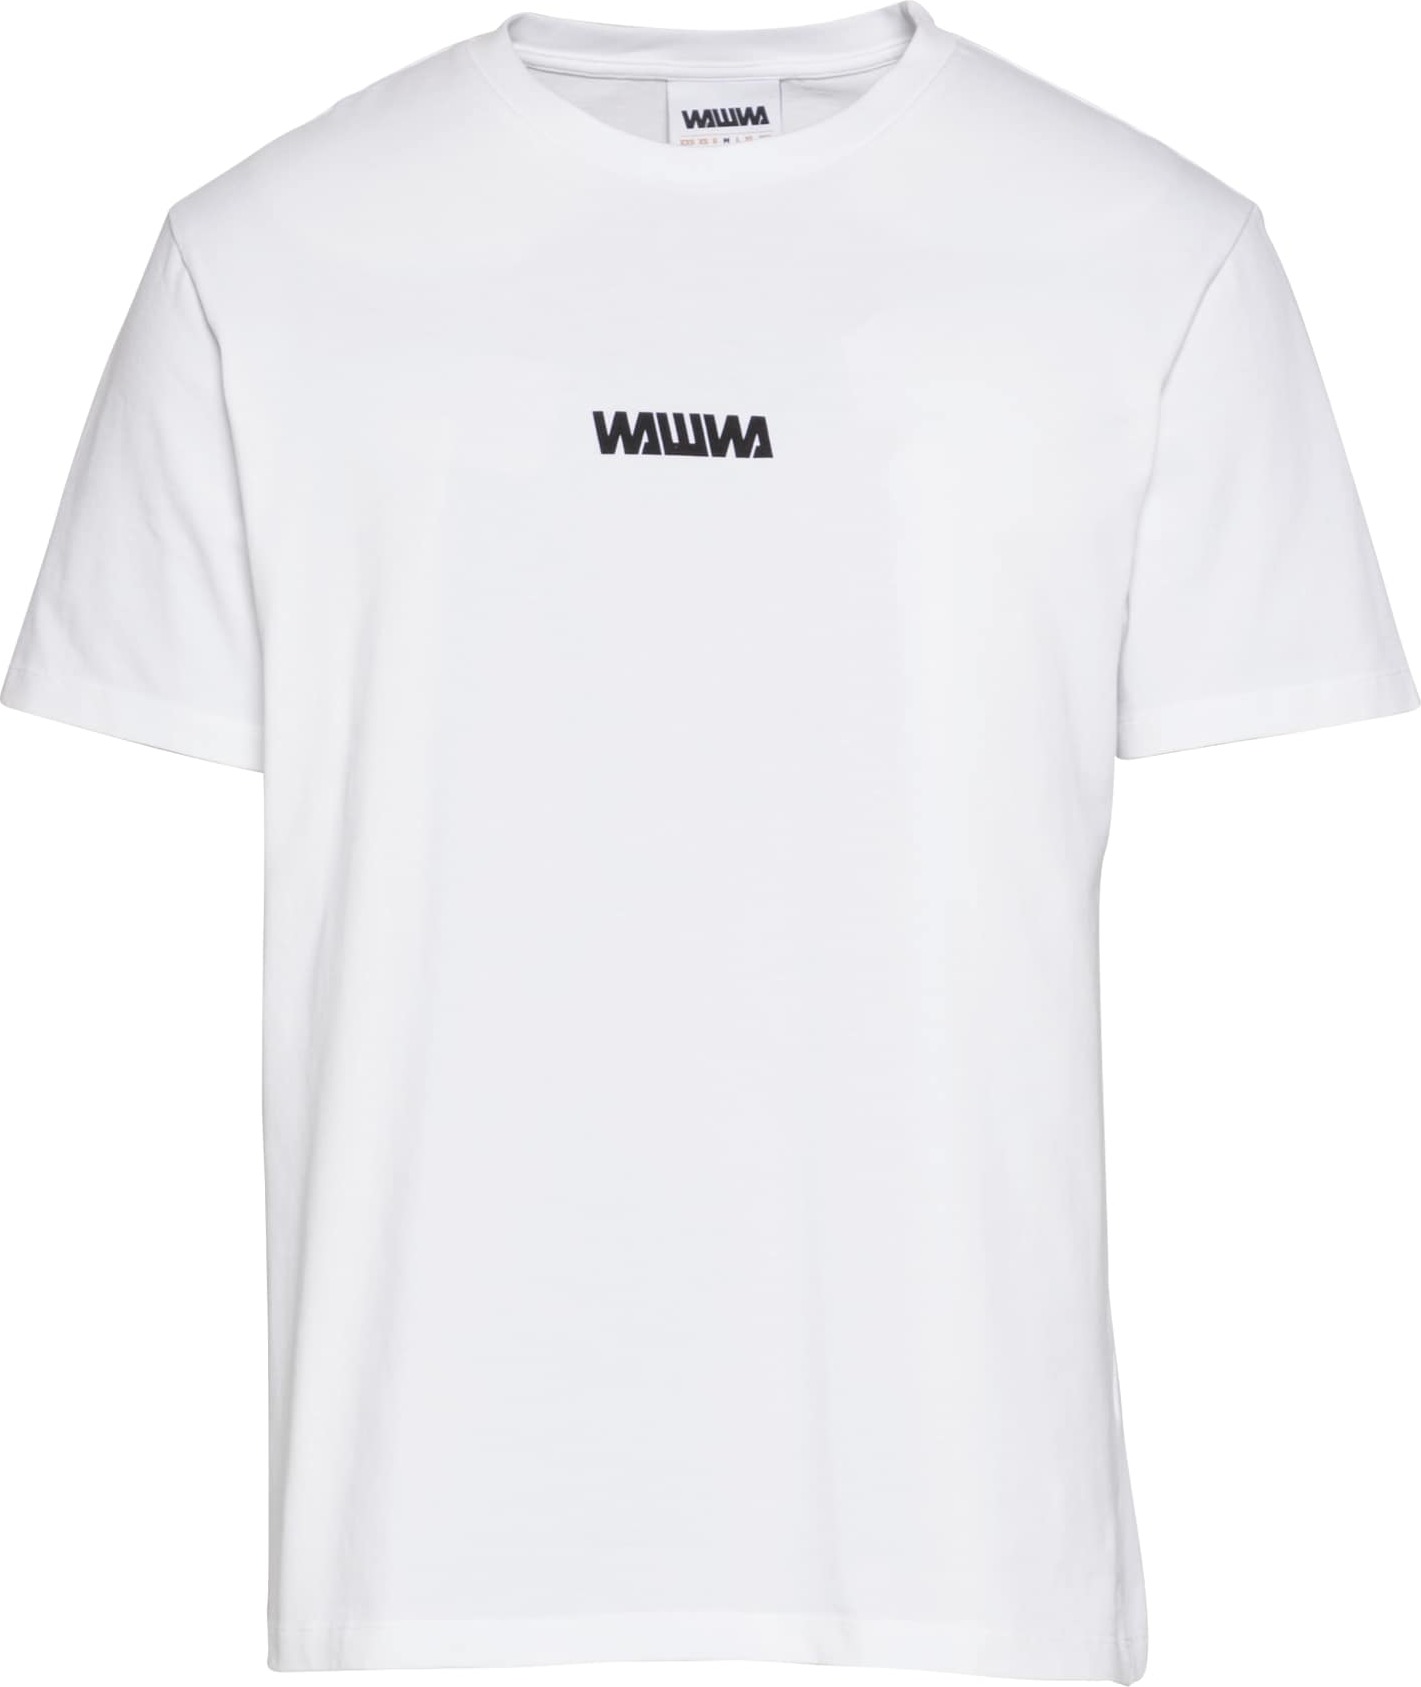 WAWWA Tričko bílá / černá